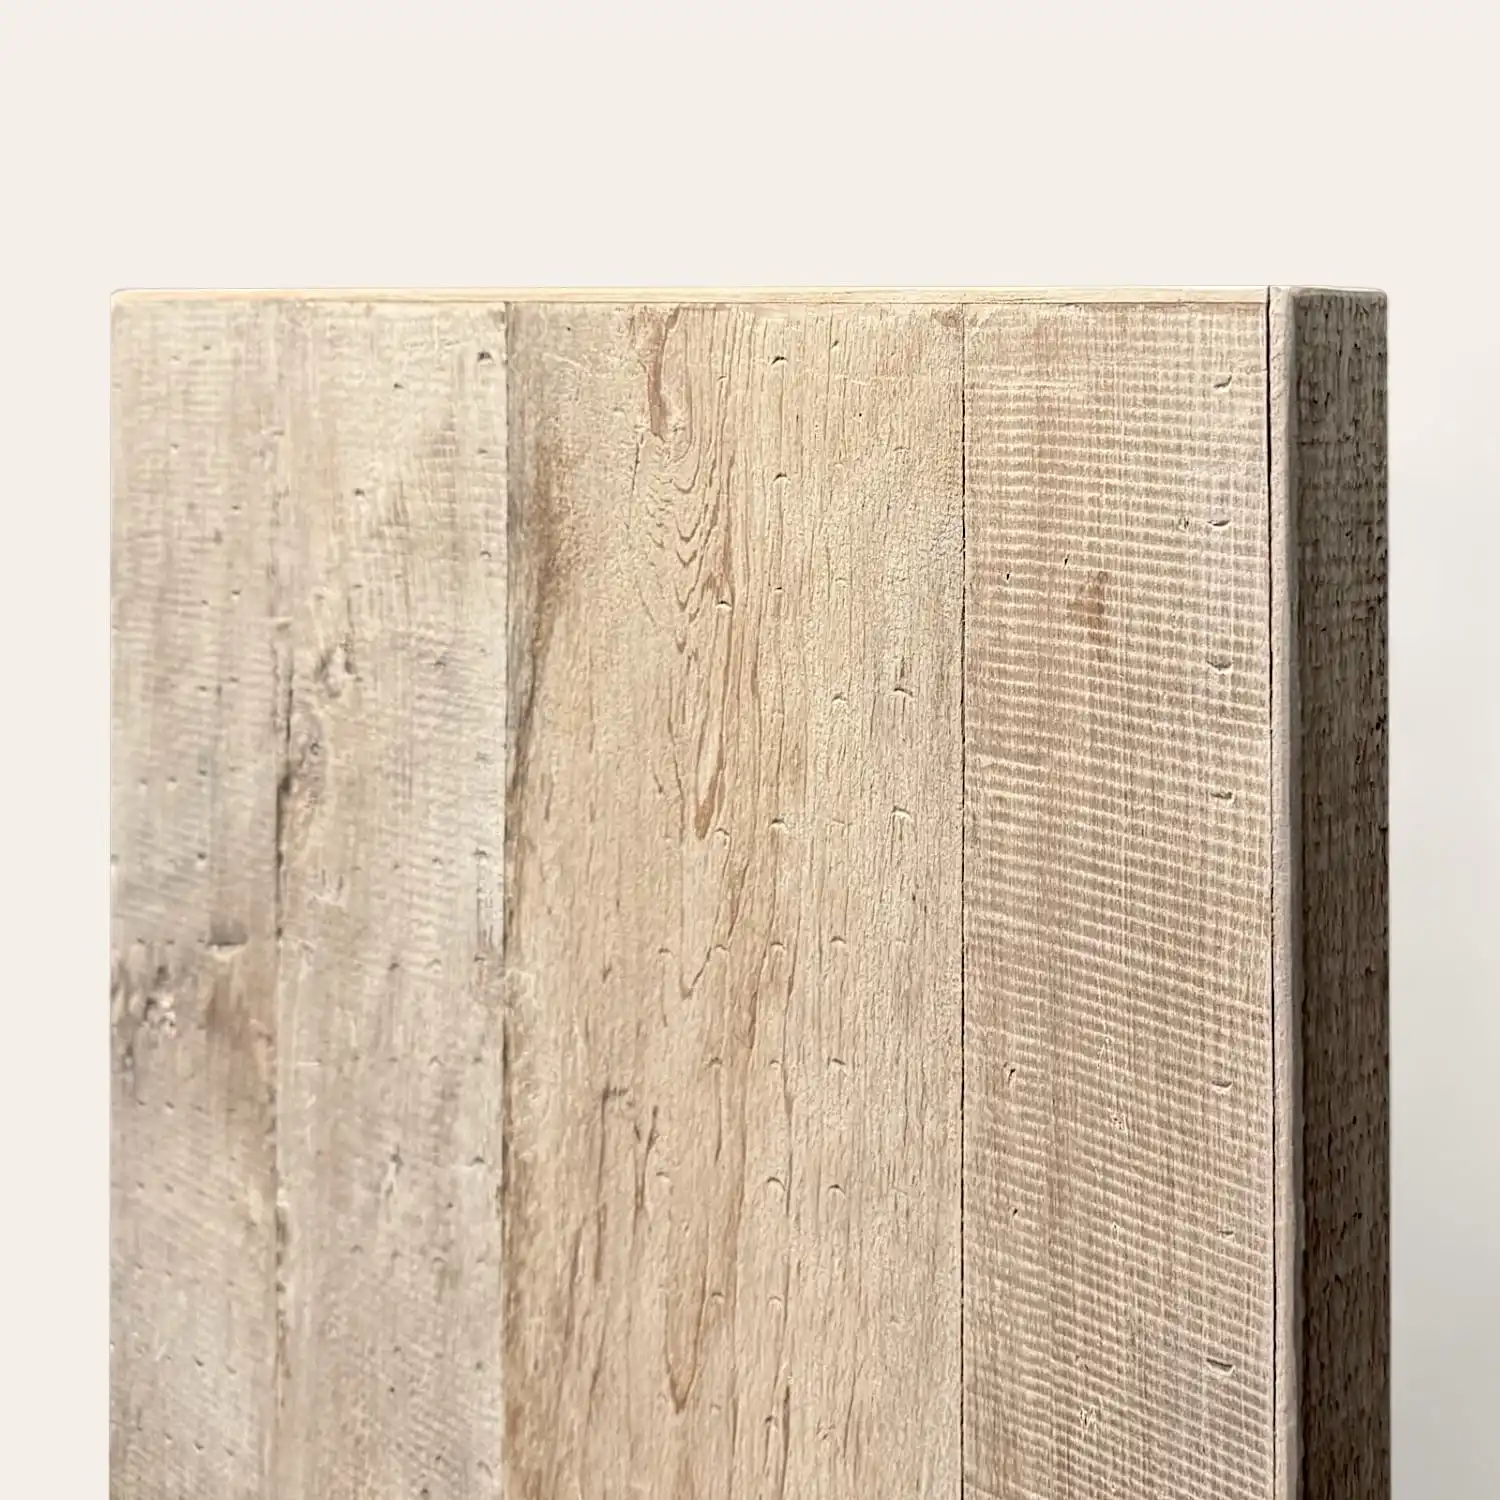  Gros plan d'un panneau de bois au grain et à la texture visibles sur fond gris clair, décrit comme 